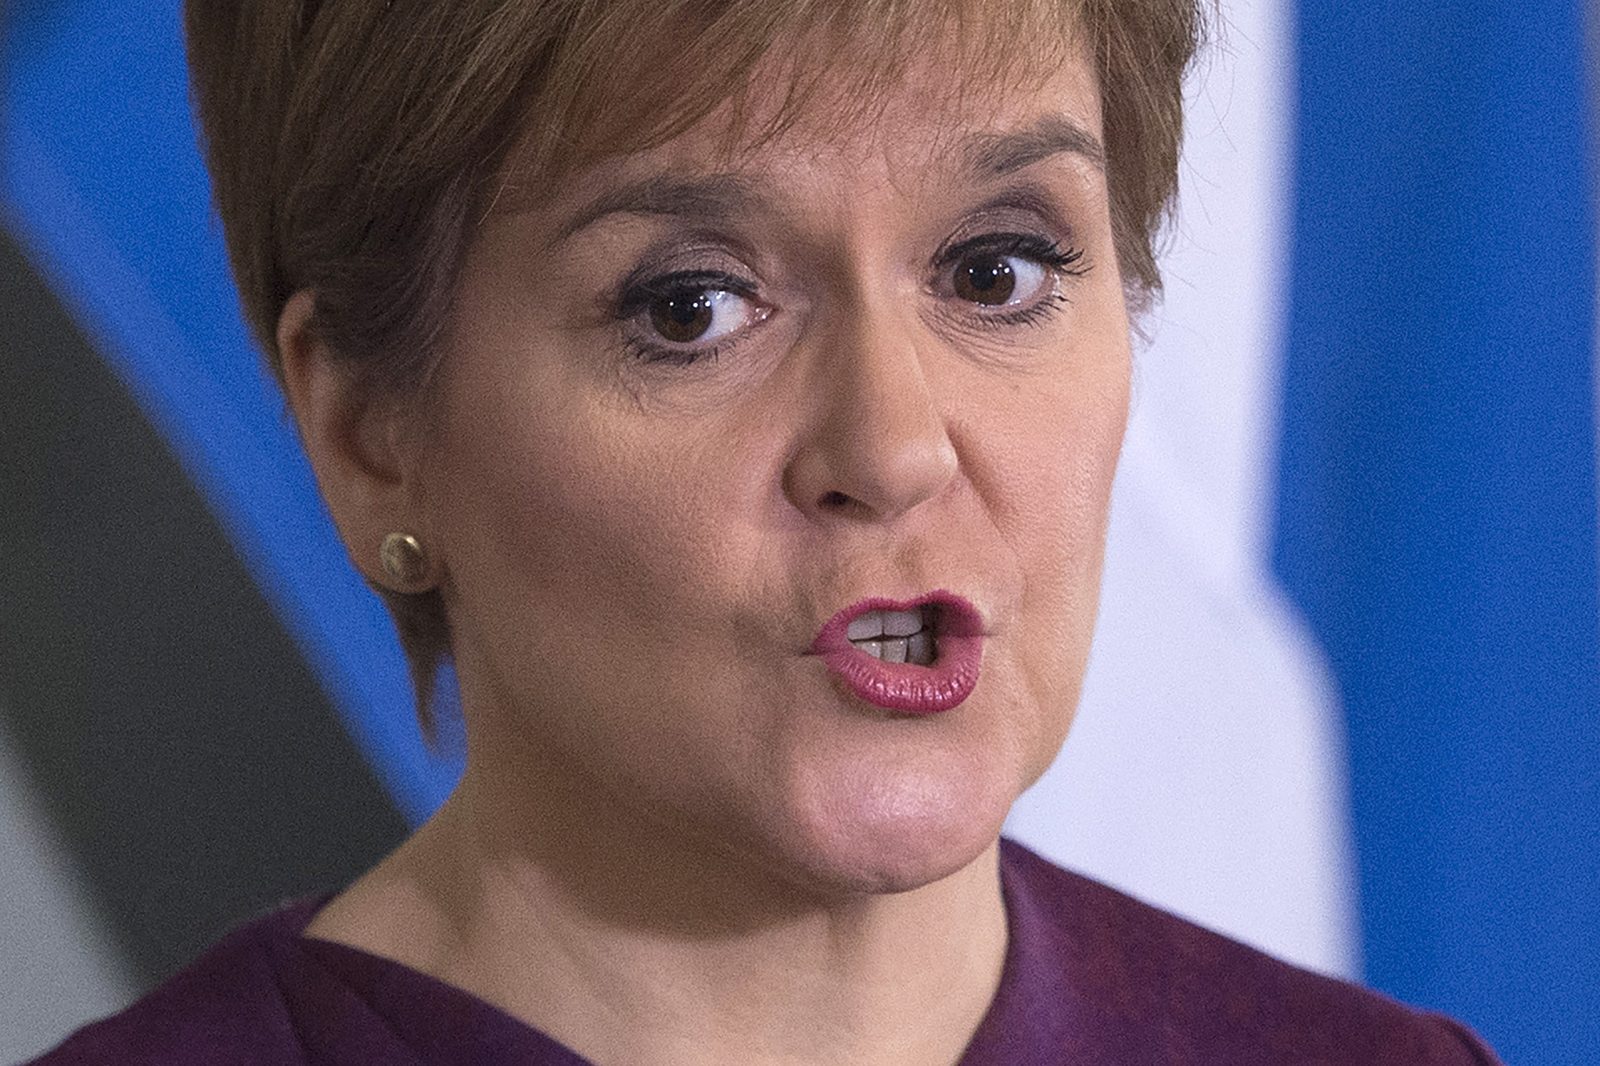 Nicola Sturgeon calls for Scottish independence referendum next year